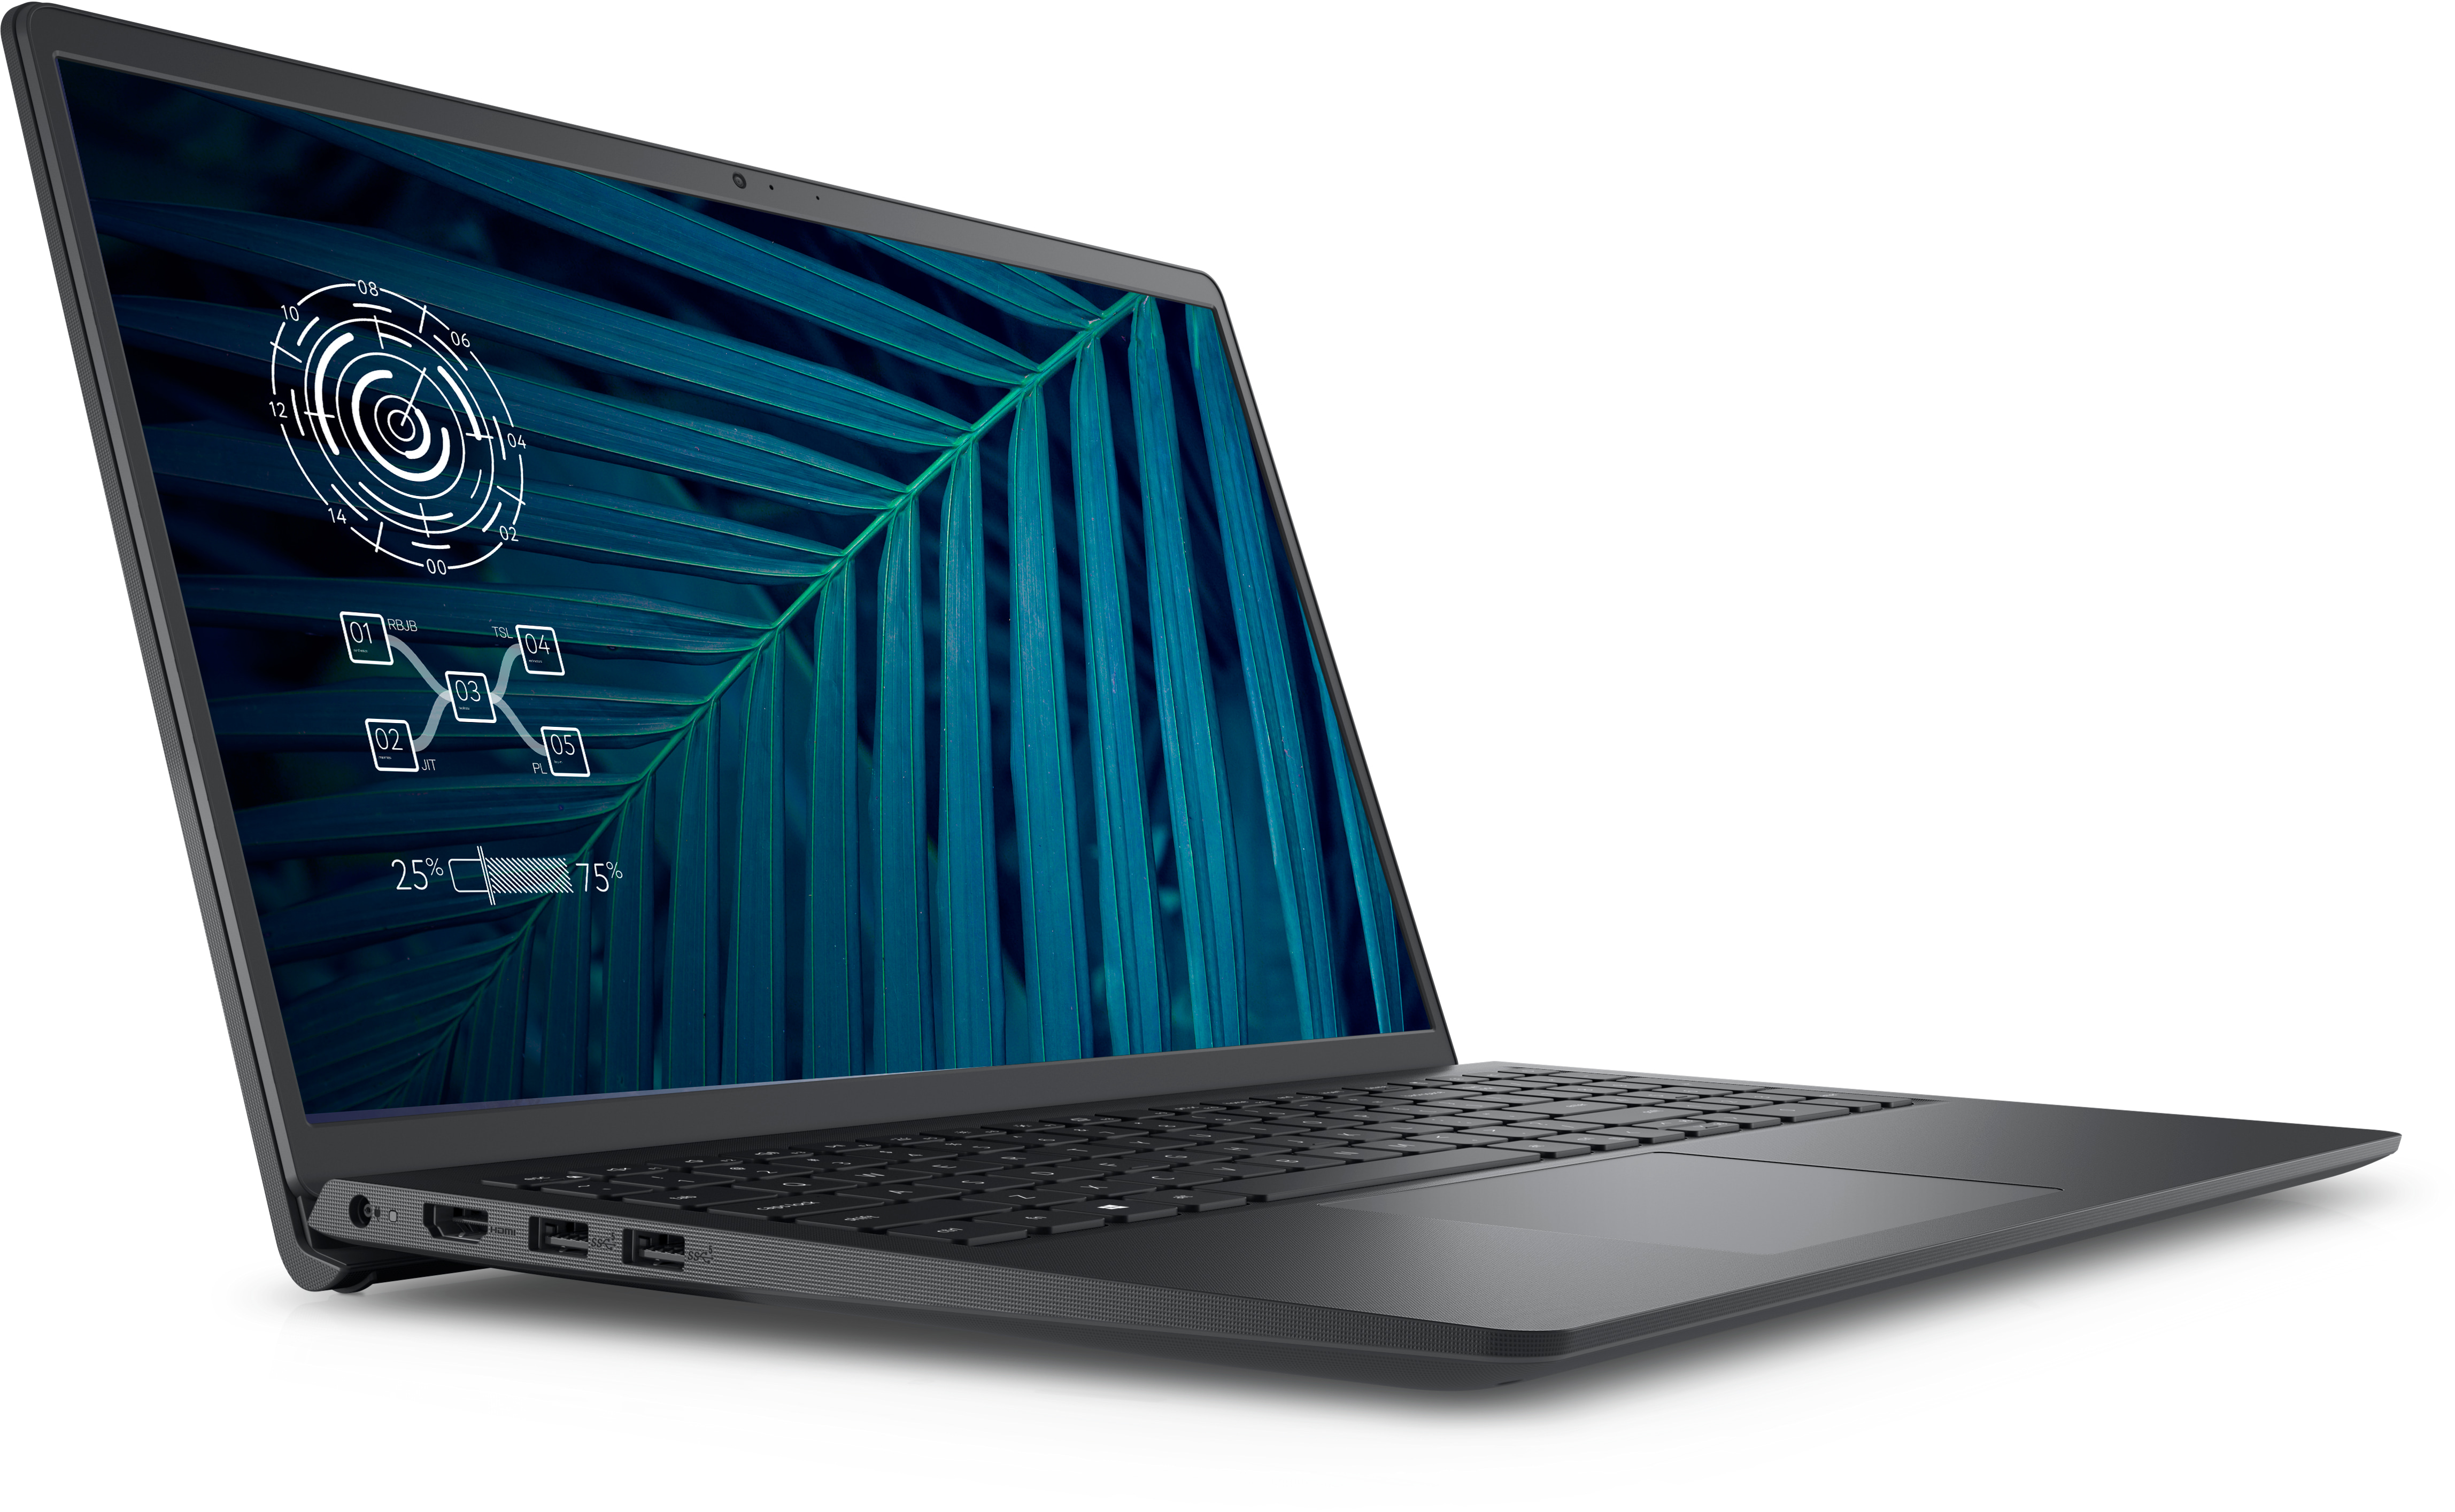 Dell Vostro 3510 laptop with Intel processor | Dell USA